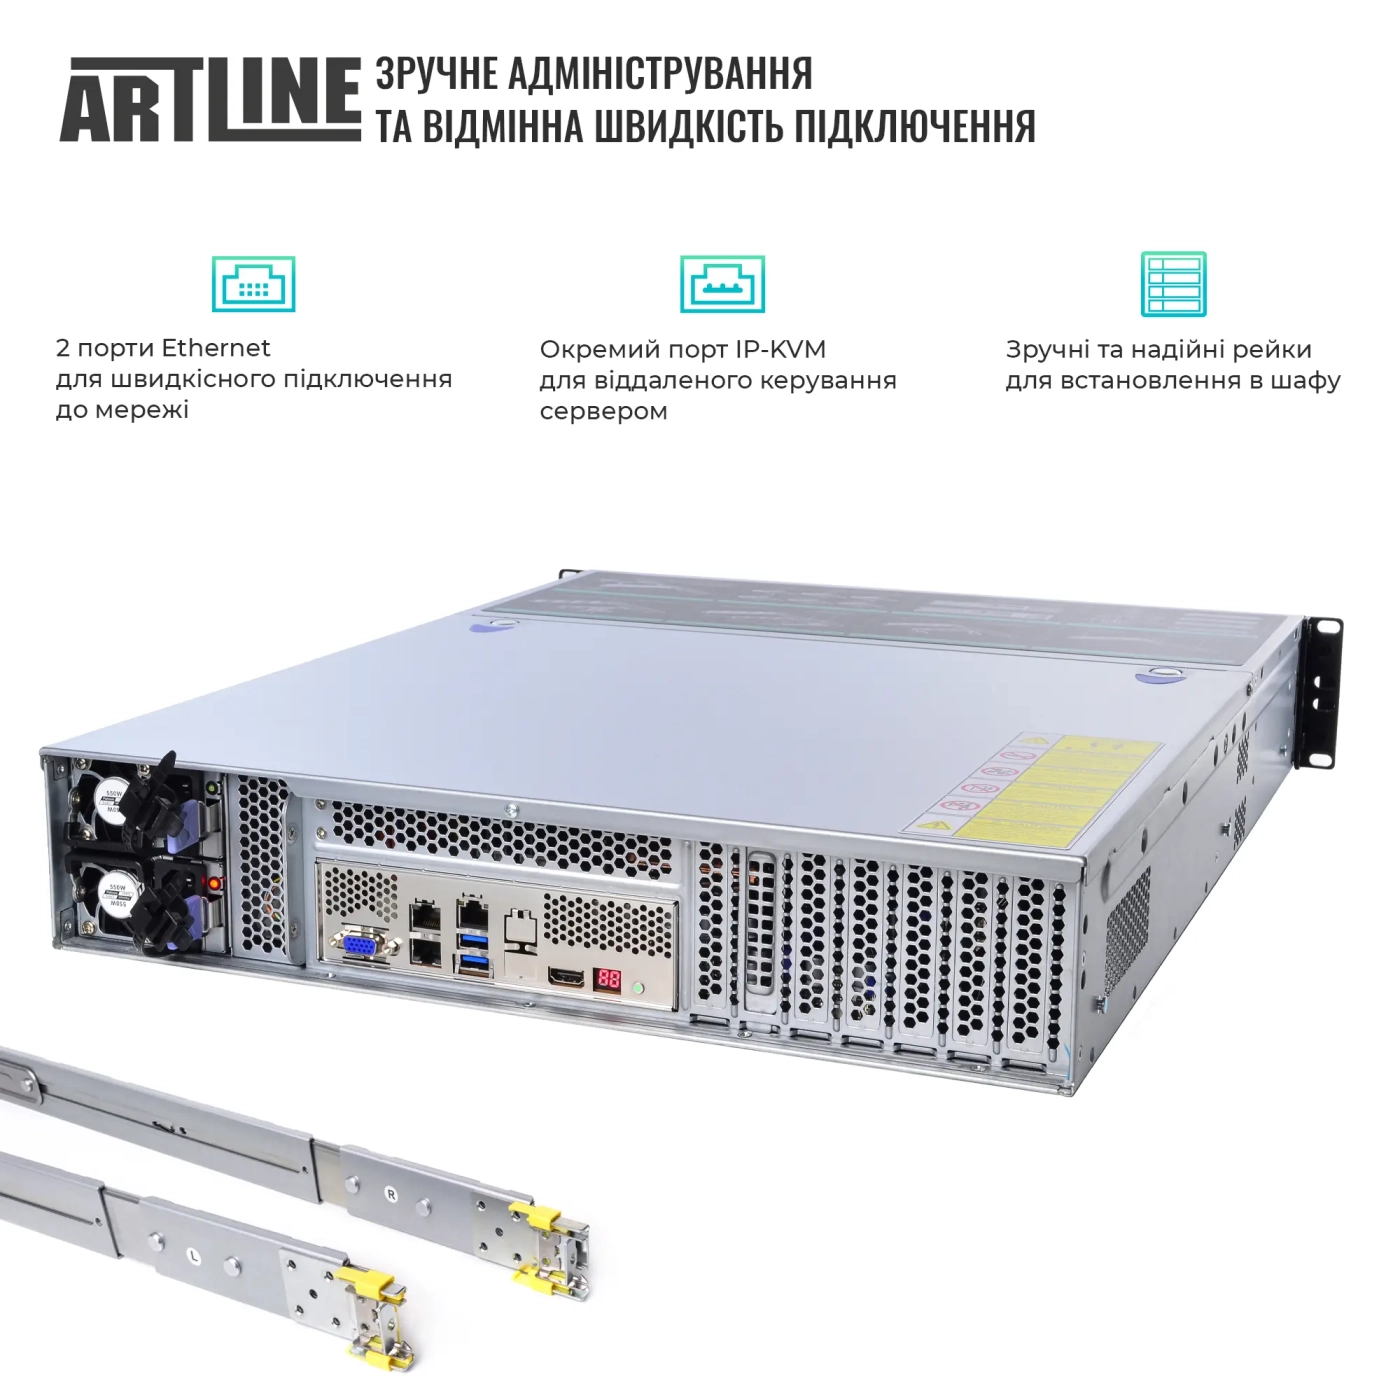 Купить Сервер ARTLINE Business R37 (R37v45) - фото 2